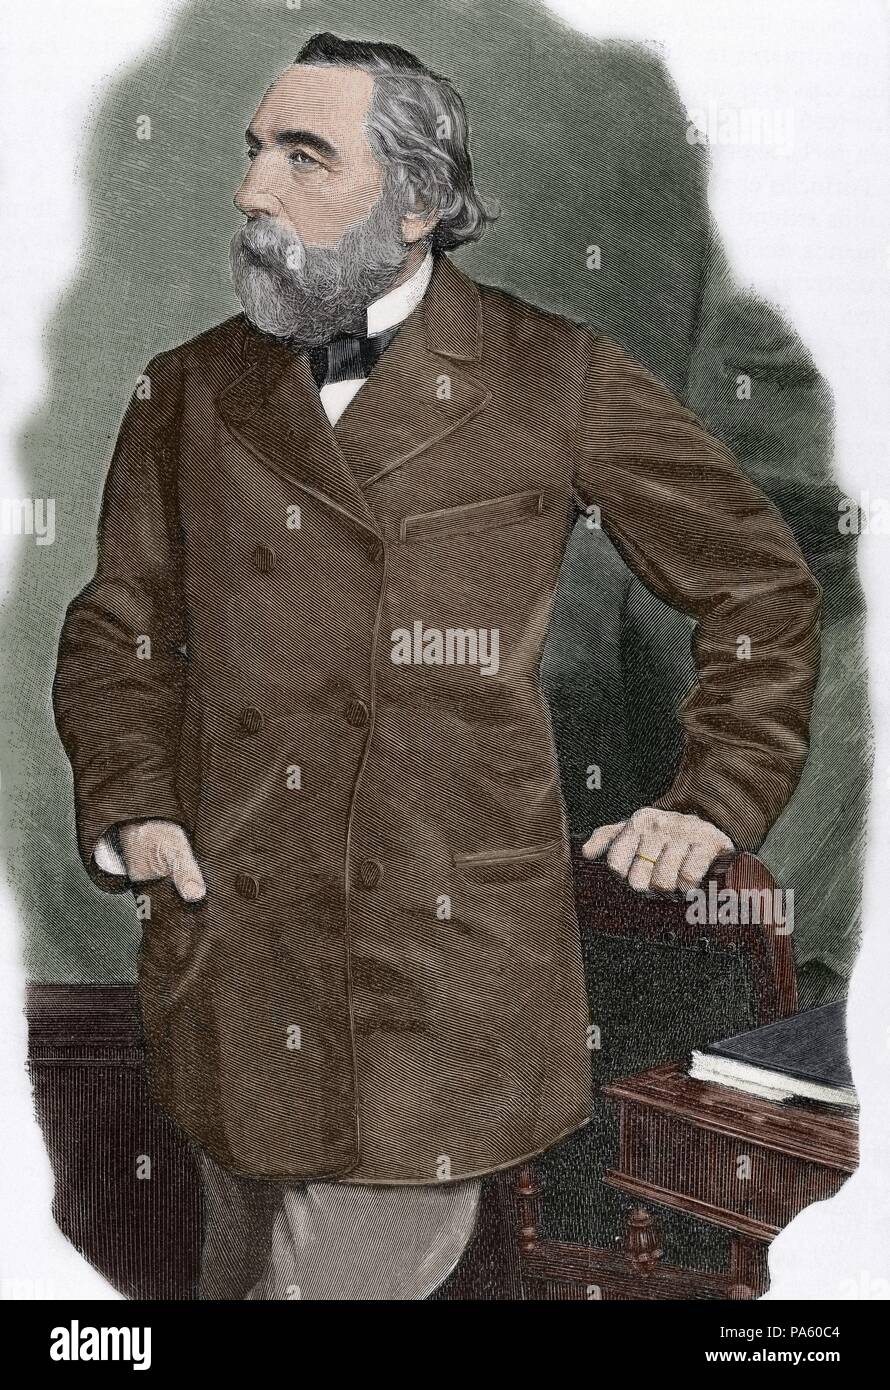 Ion Ghica (1816-1897). Rumänischen Revolutionäre, Mathematiker, Diplomat und Politiker. Er war Premierminister von Rumänien fünf Mal. Porträt. Gravur. Gefärbt. Stockfoto